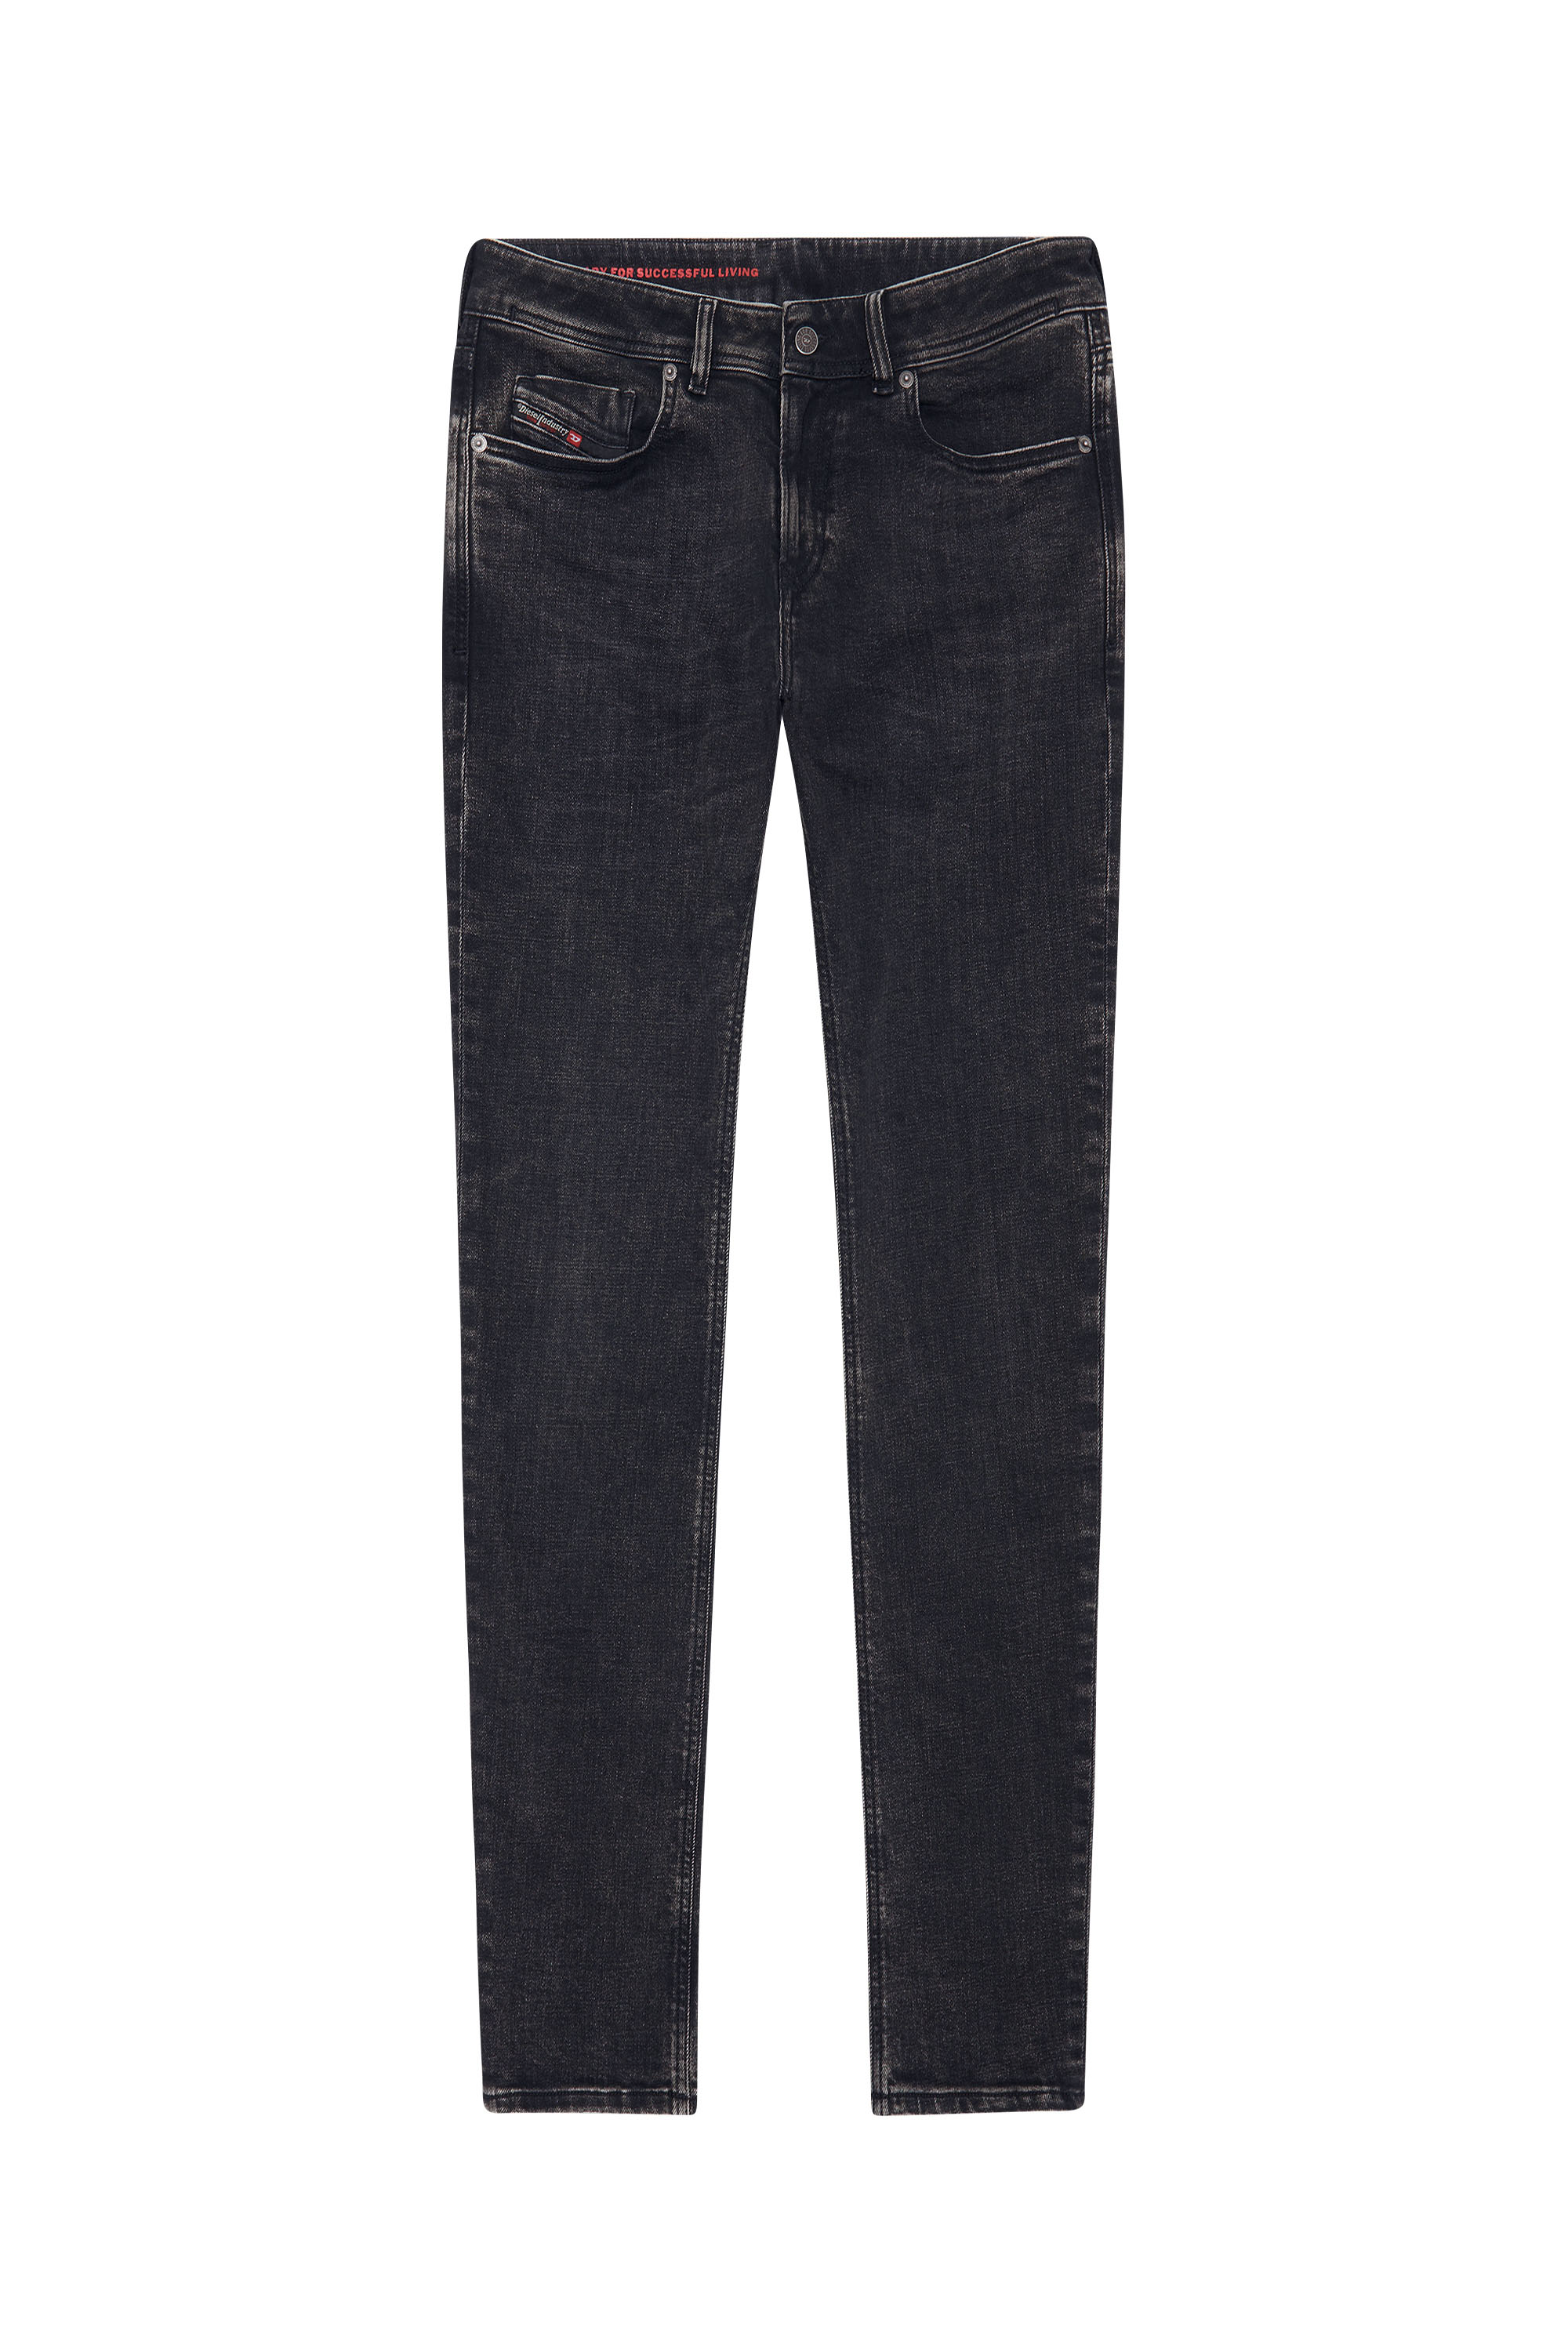 1979 Sleenker 09C23 Skinny Jeans, Black/Dark grey